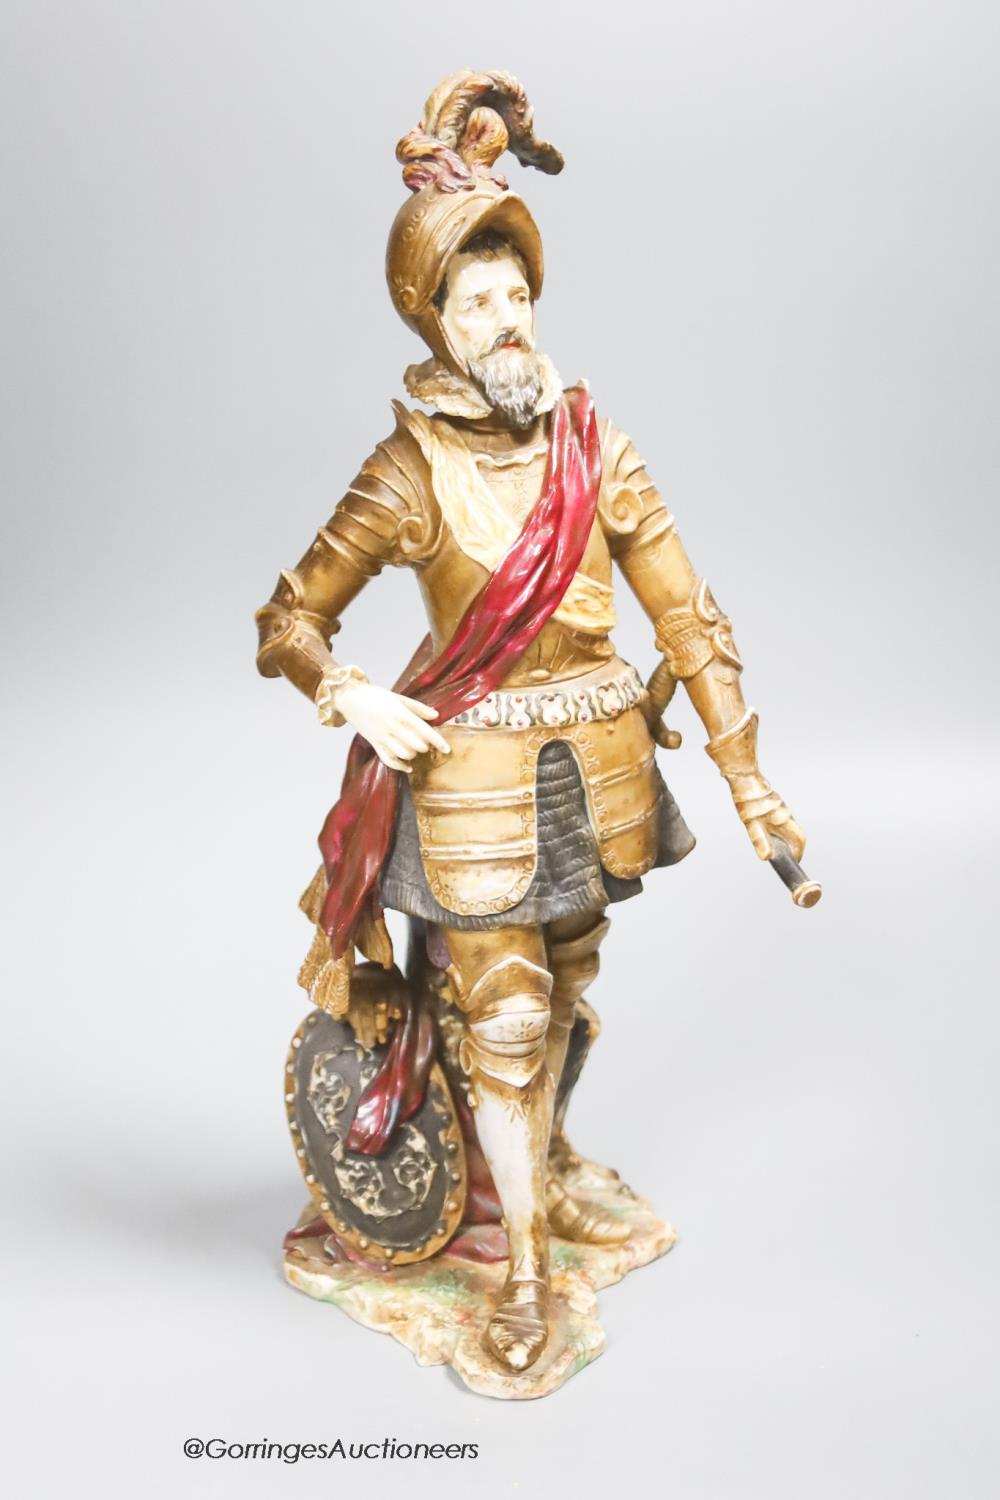 A Rudolstadt porcelain figure of a knight, height 39cm